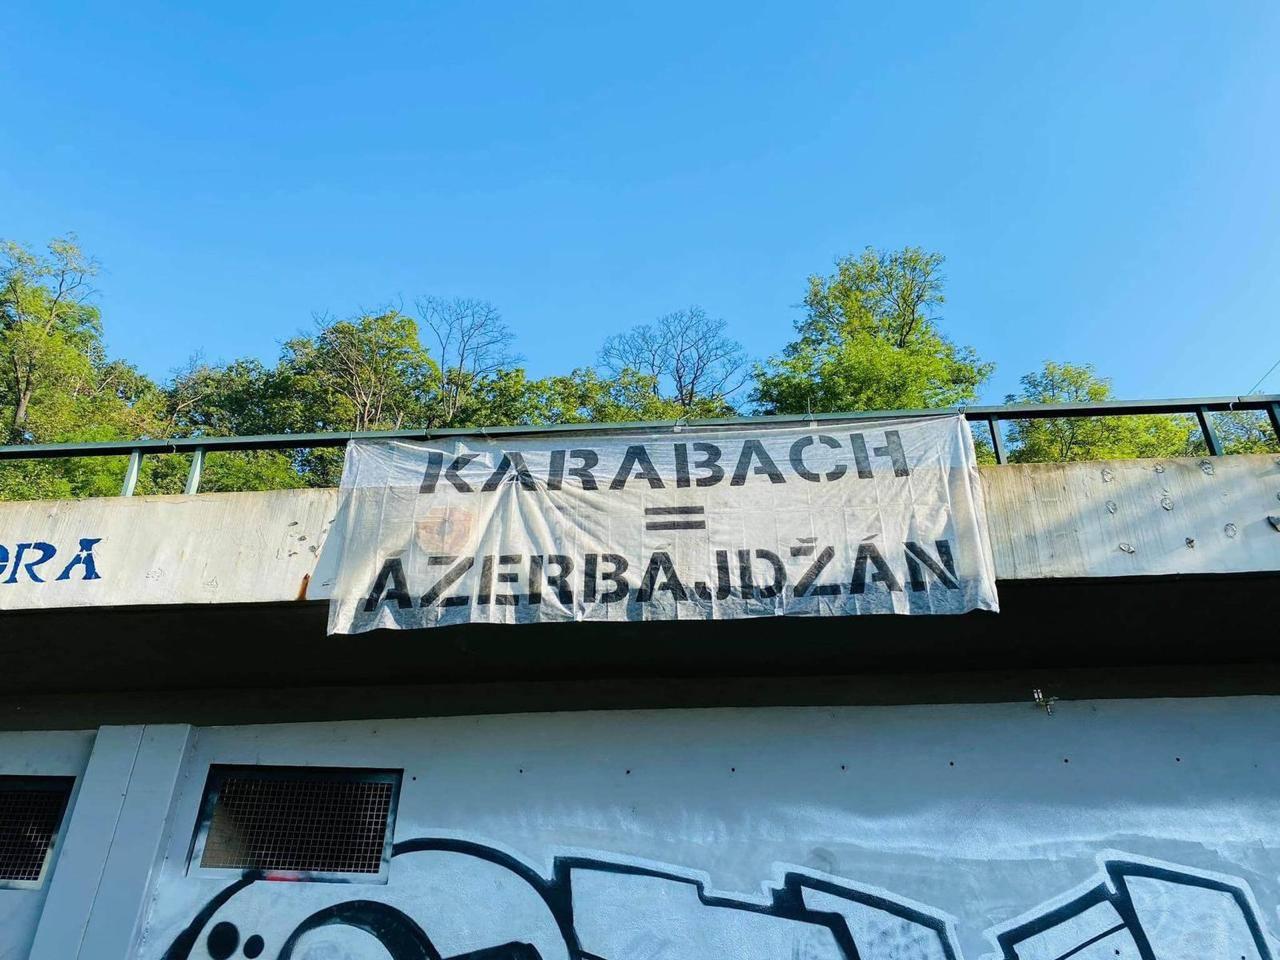 Praqanın mərkəzi körpüsündən Qarabağ Azərbaycandır! posteri asılıb